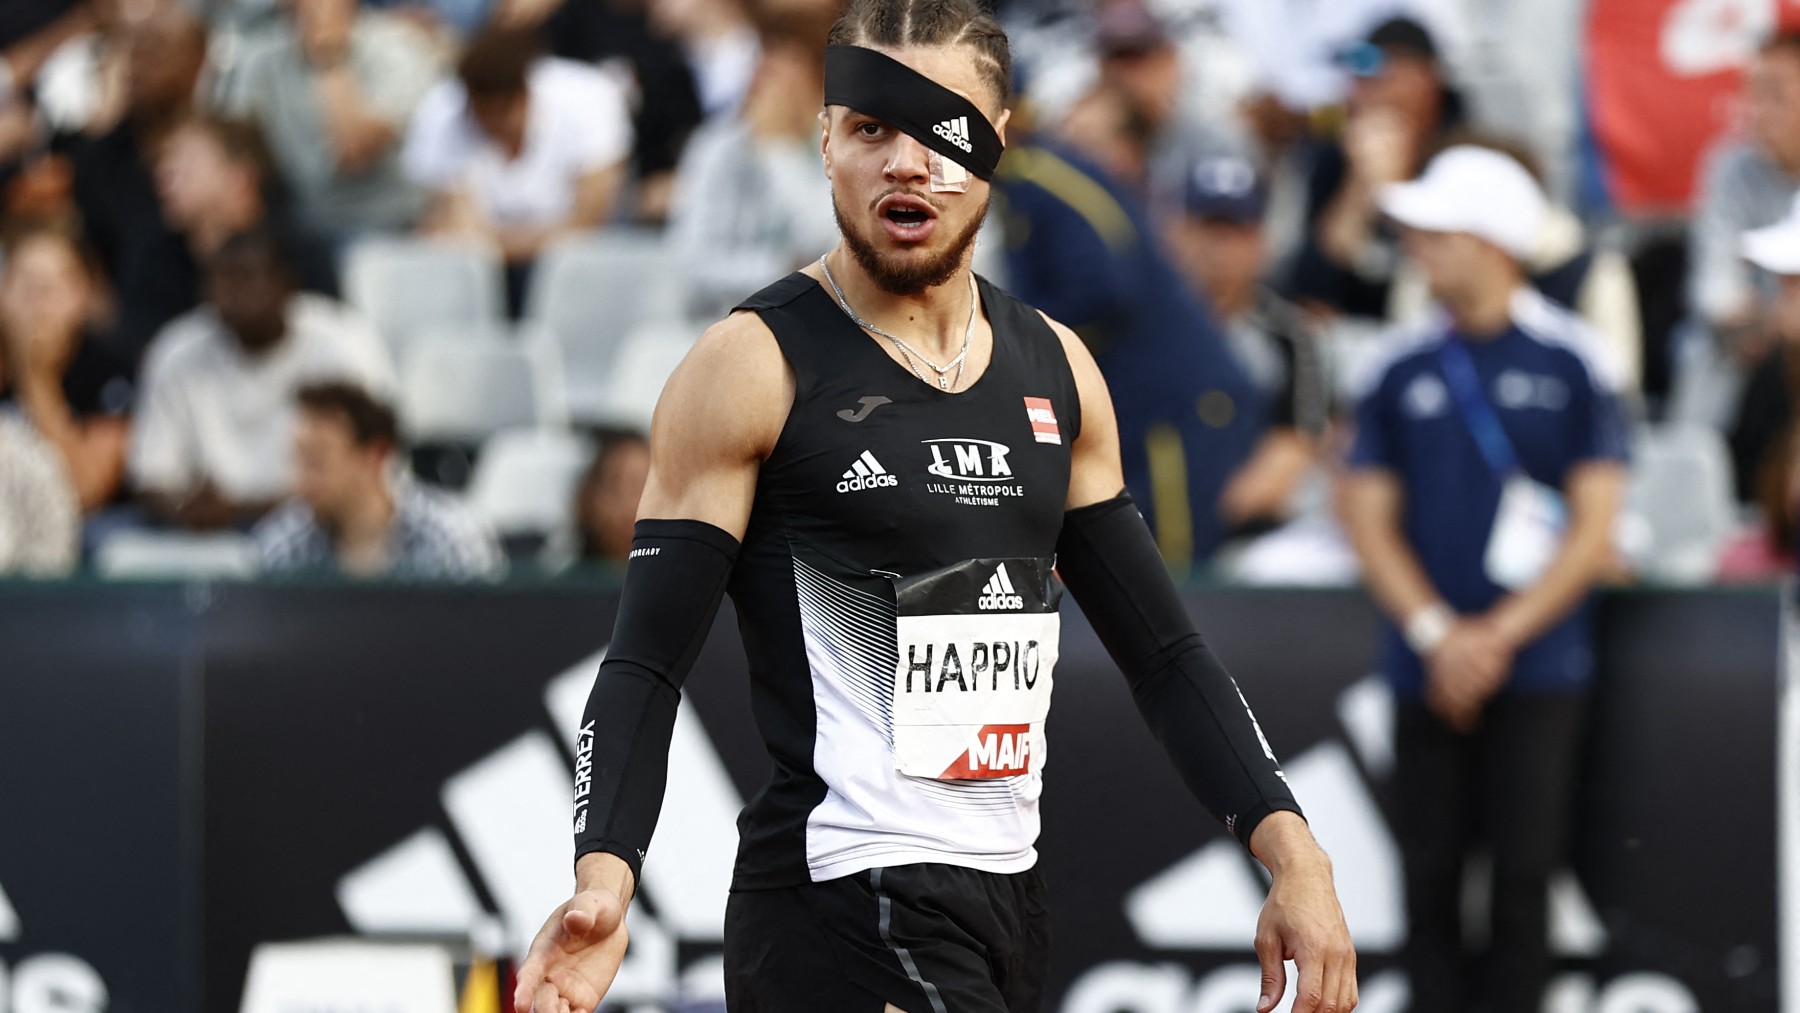 Wilfried Happio, con un vendaje tras ser agredido durante el calentamiento de la final masculina de 400 metros vallas. (AFP)